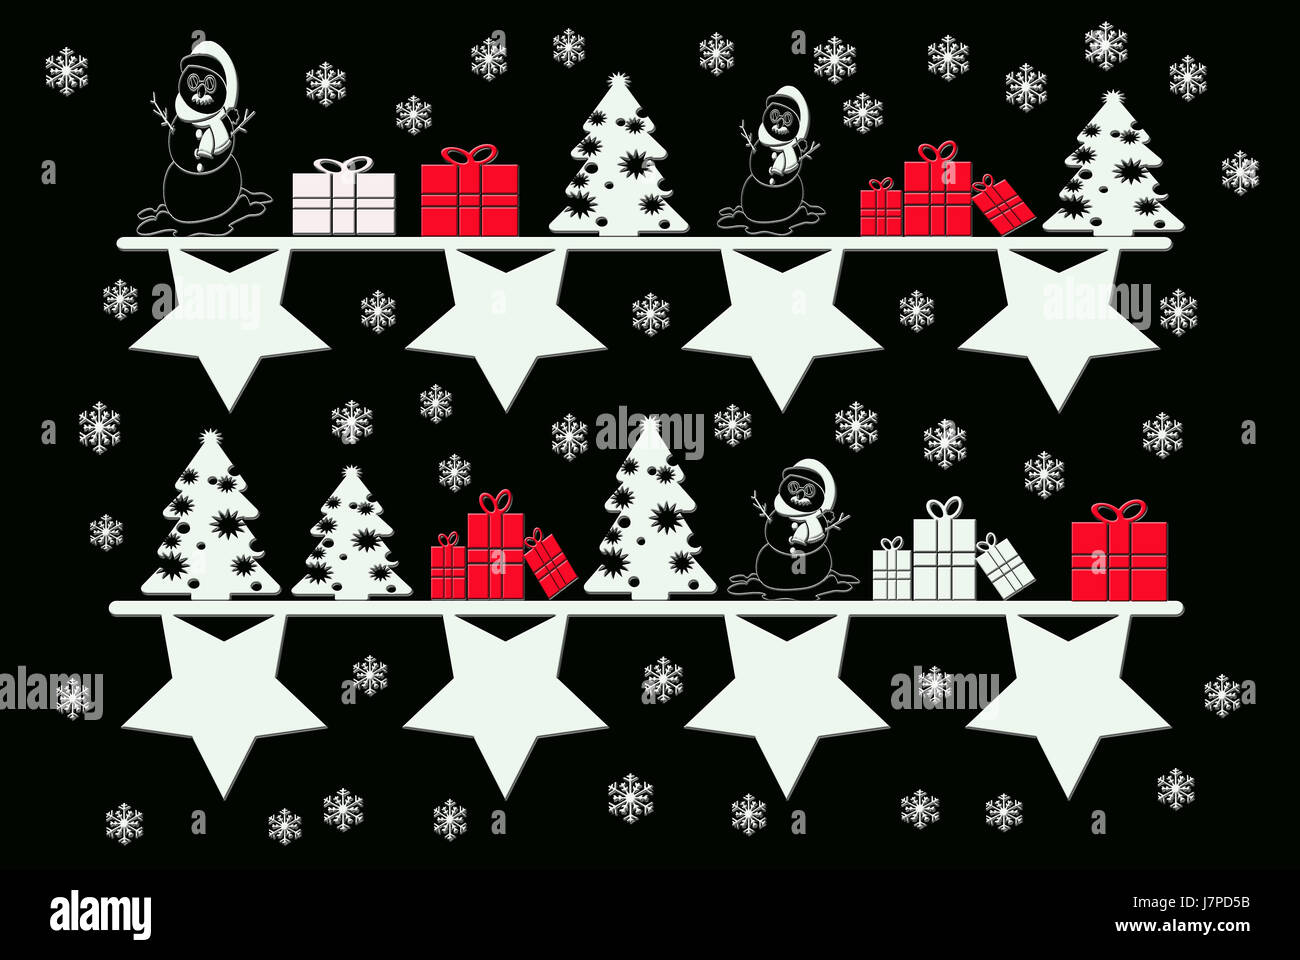 Symbole Weihnachten Karte Weihnachten Weihnachten x-mas Grafik farbig bunt wunderschön Stockfoto